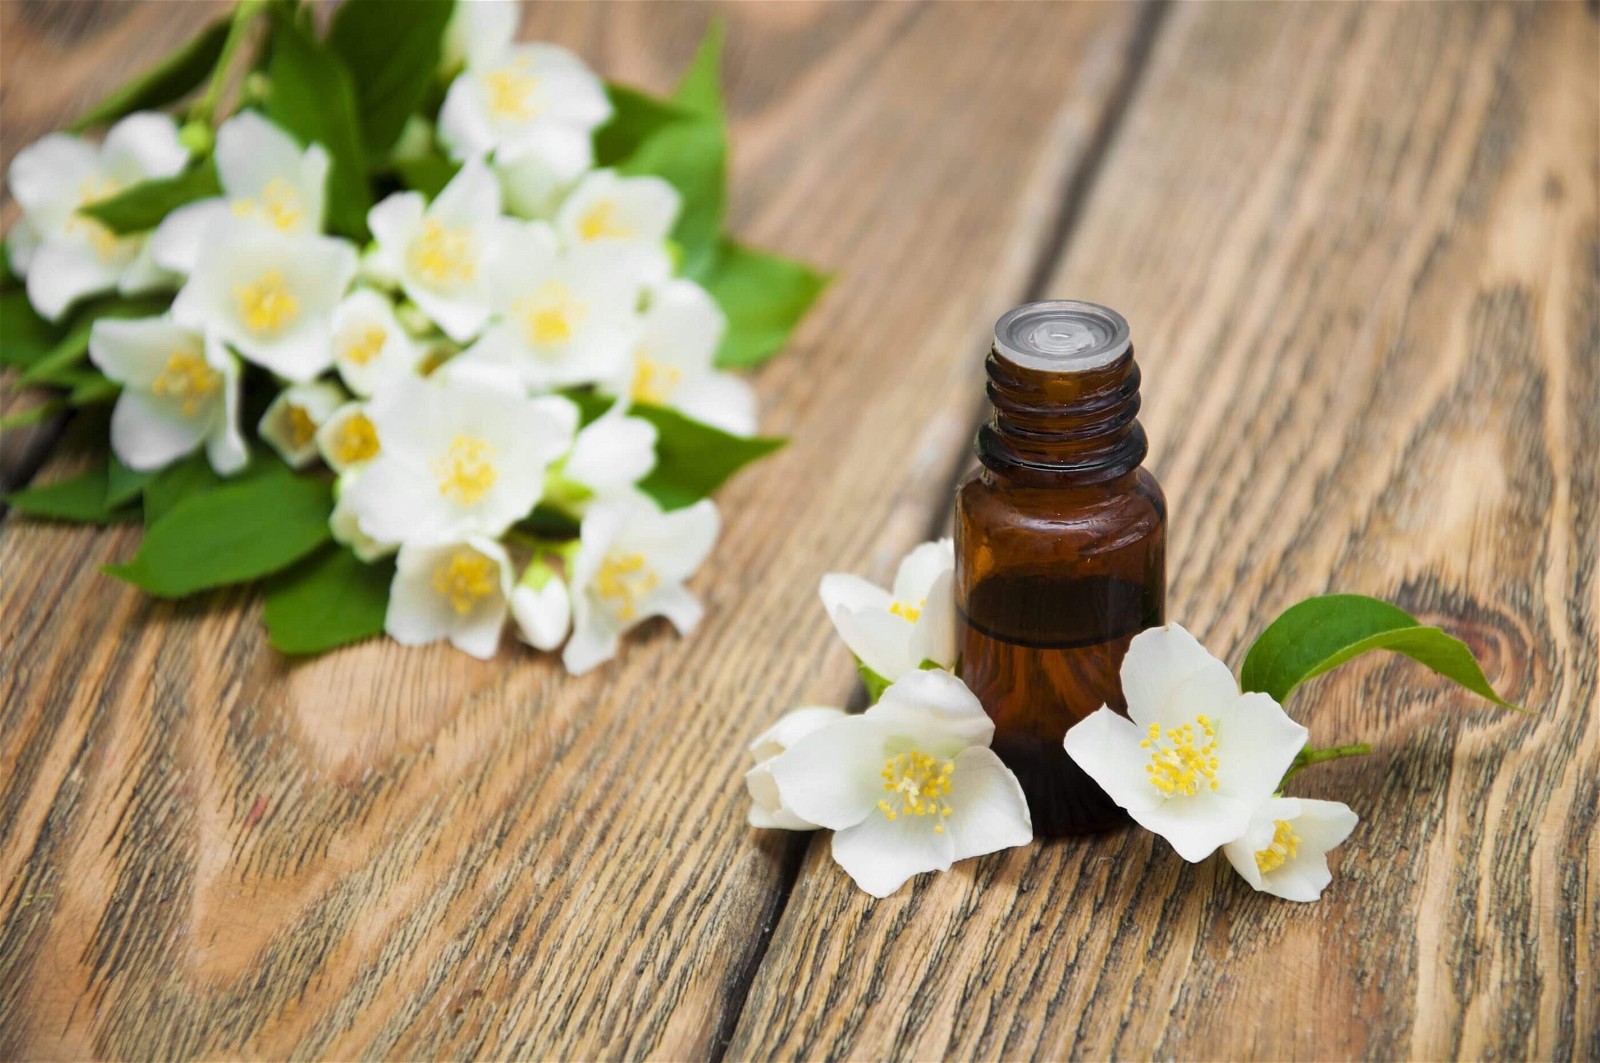 Tinh dầu Jasmine đem lại hương hoa nhài nở rộ thanh khiết.